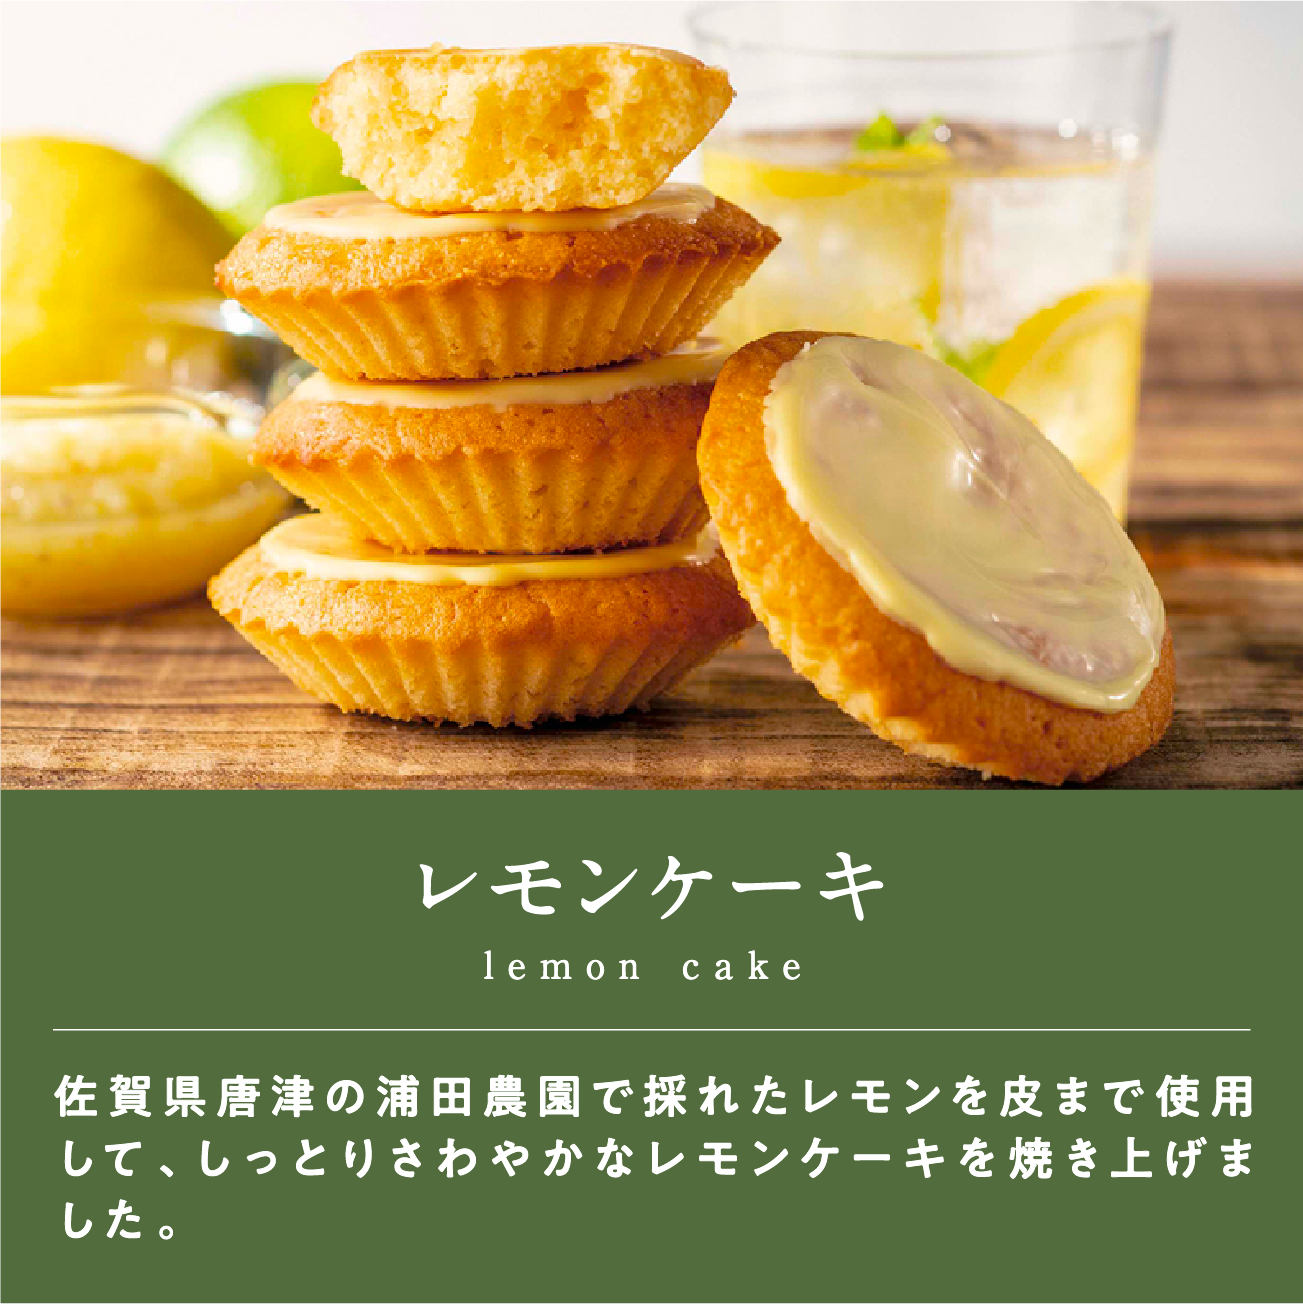 レモンケーキ佐賀県唐津の浦田農園で採れたレモンを皮まで使用して、しっとりさわやかなレモンケーキを焼き上げました。